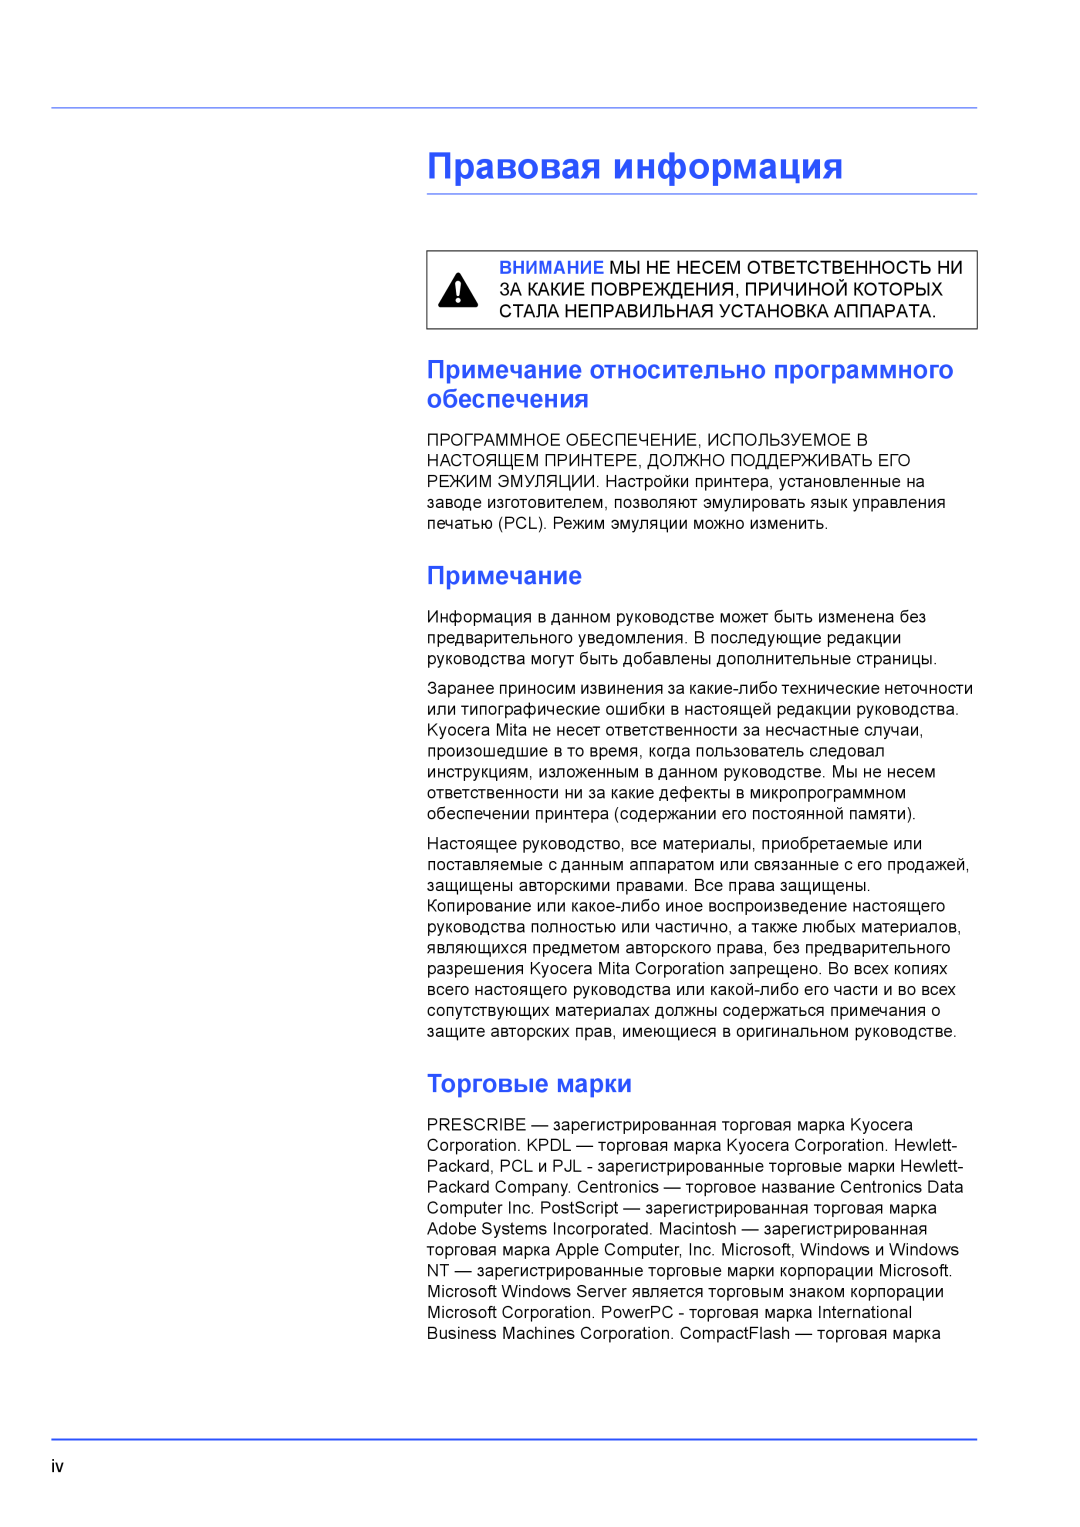 Kyocera FS-1300D, FS-1100 manual Правовая информация, Примечание относительно программного обеспечения, Торговые марки 